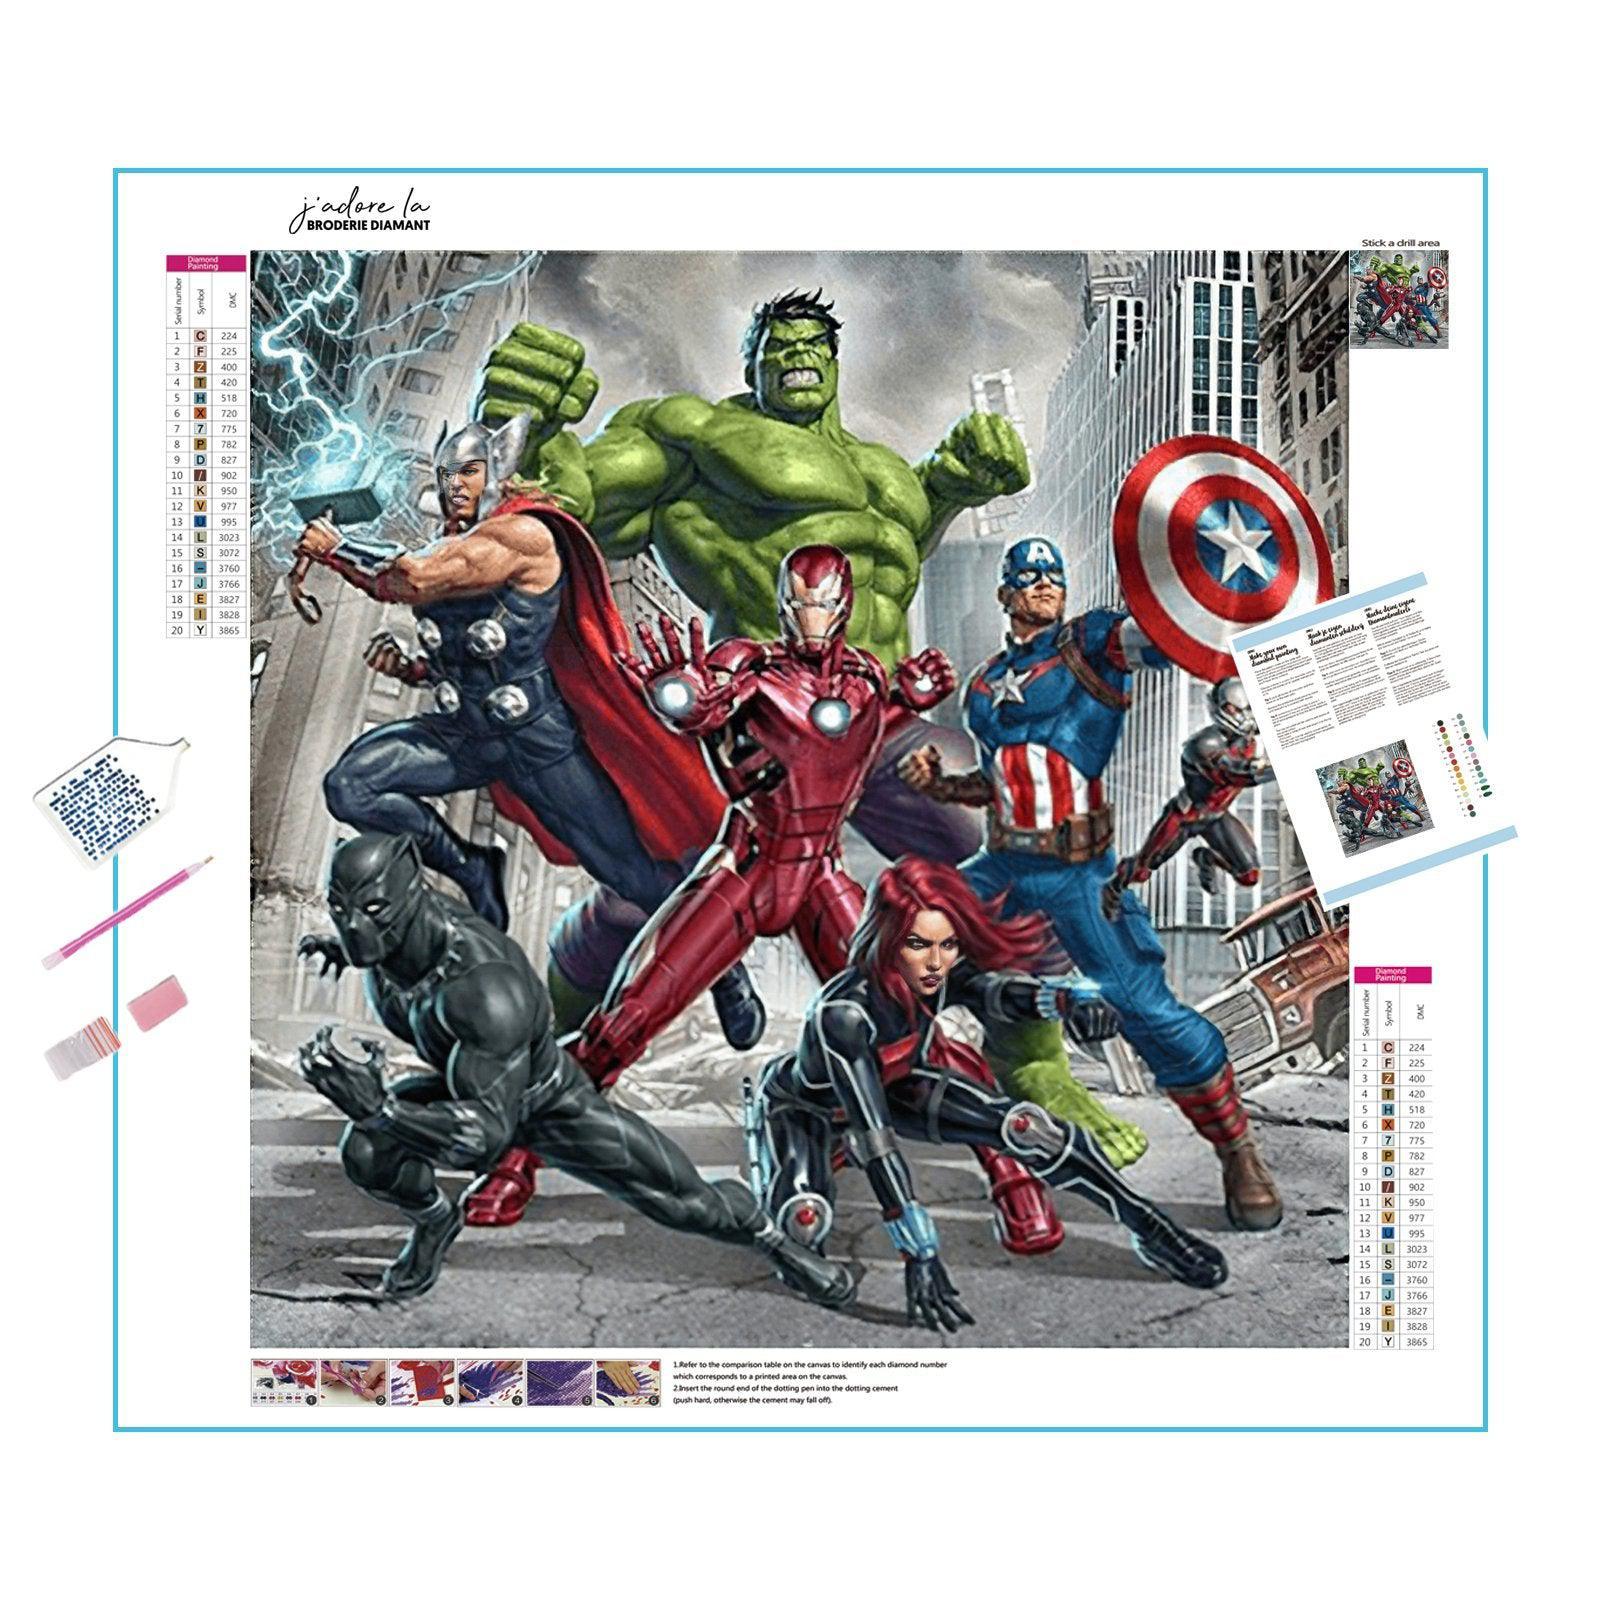 Join Earth's Mightiest Heroes in this Avengers artwork.Marvel Avengers - Diamondartlove